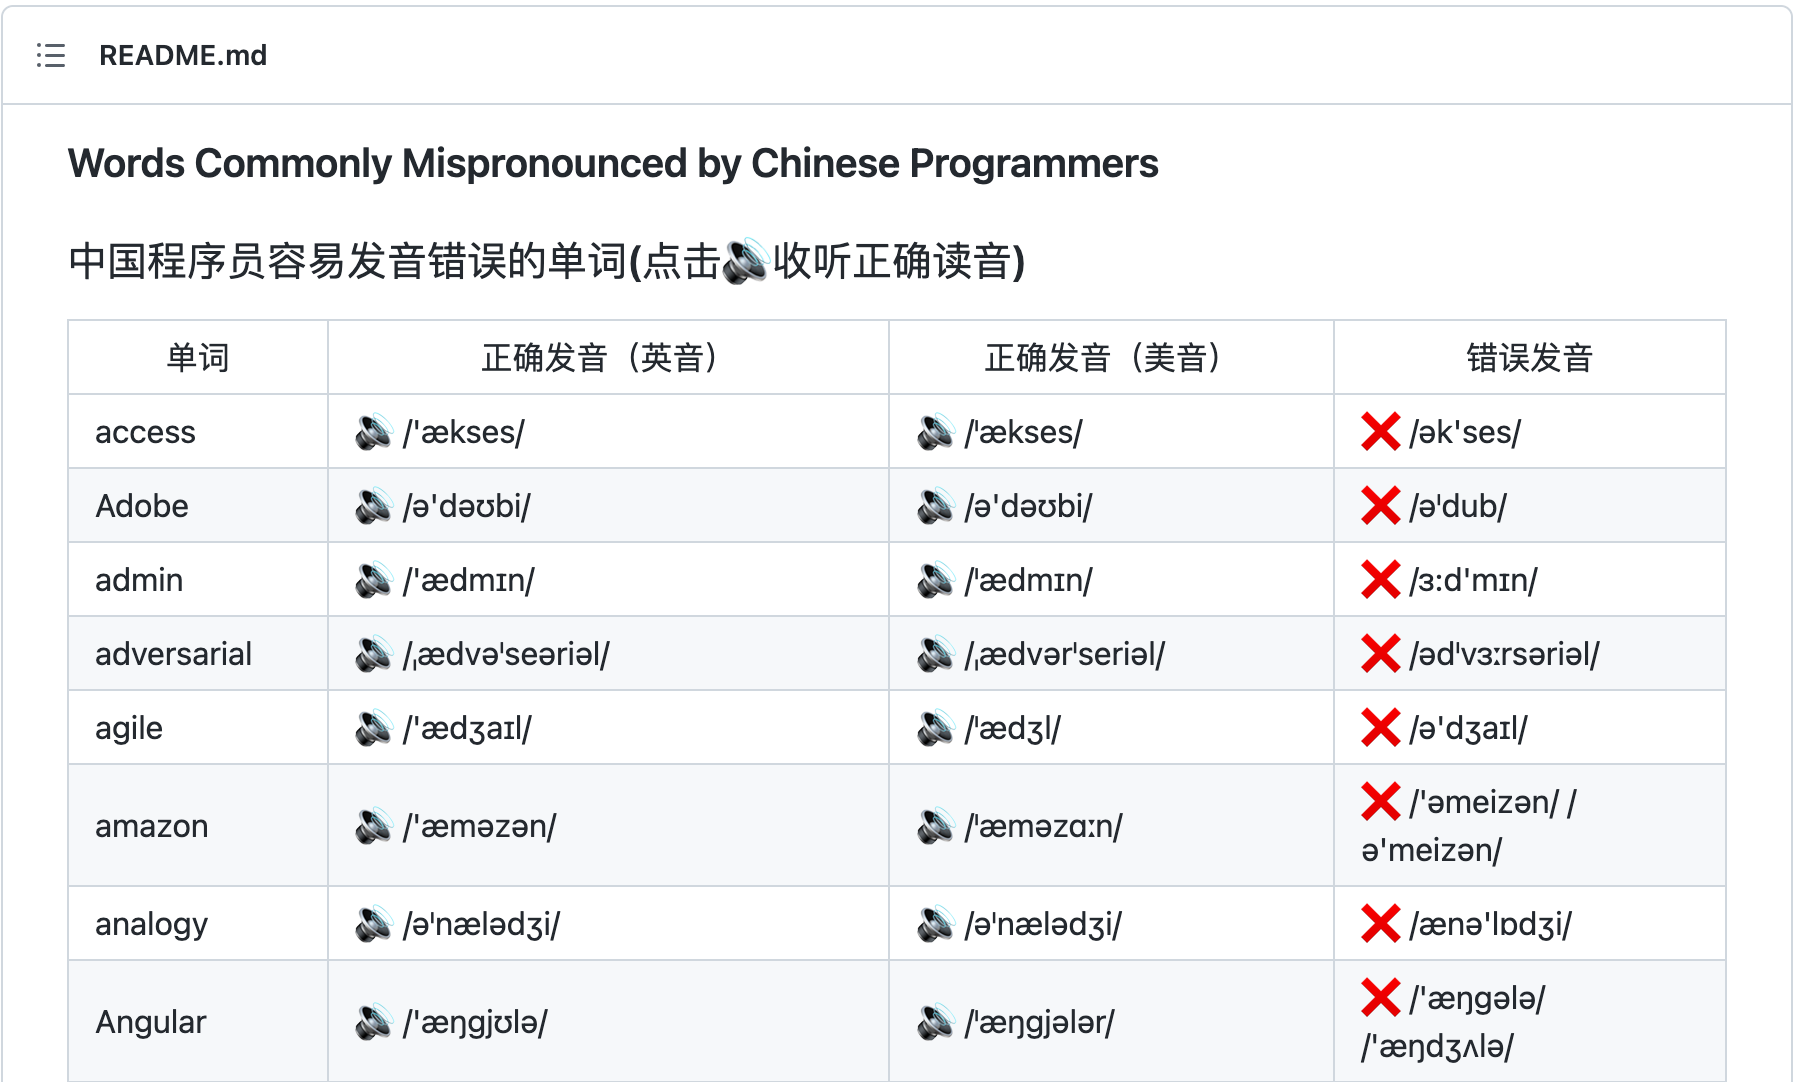 中国程序员容易发音错误的单词